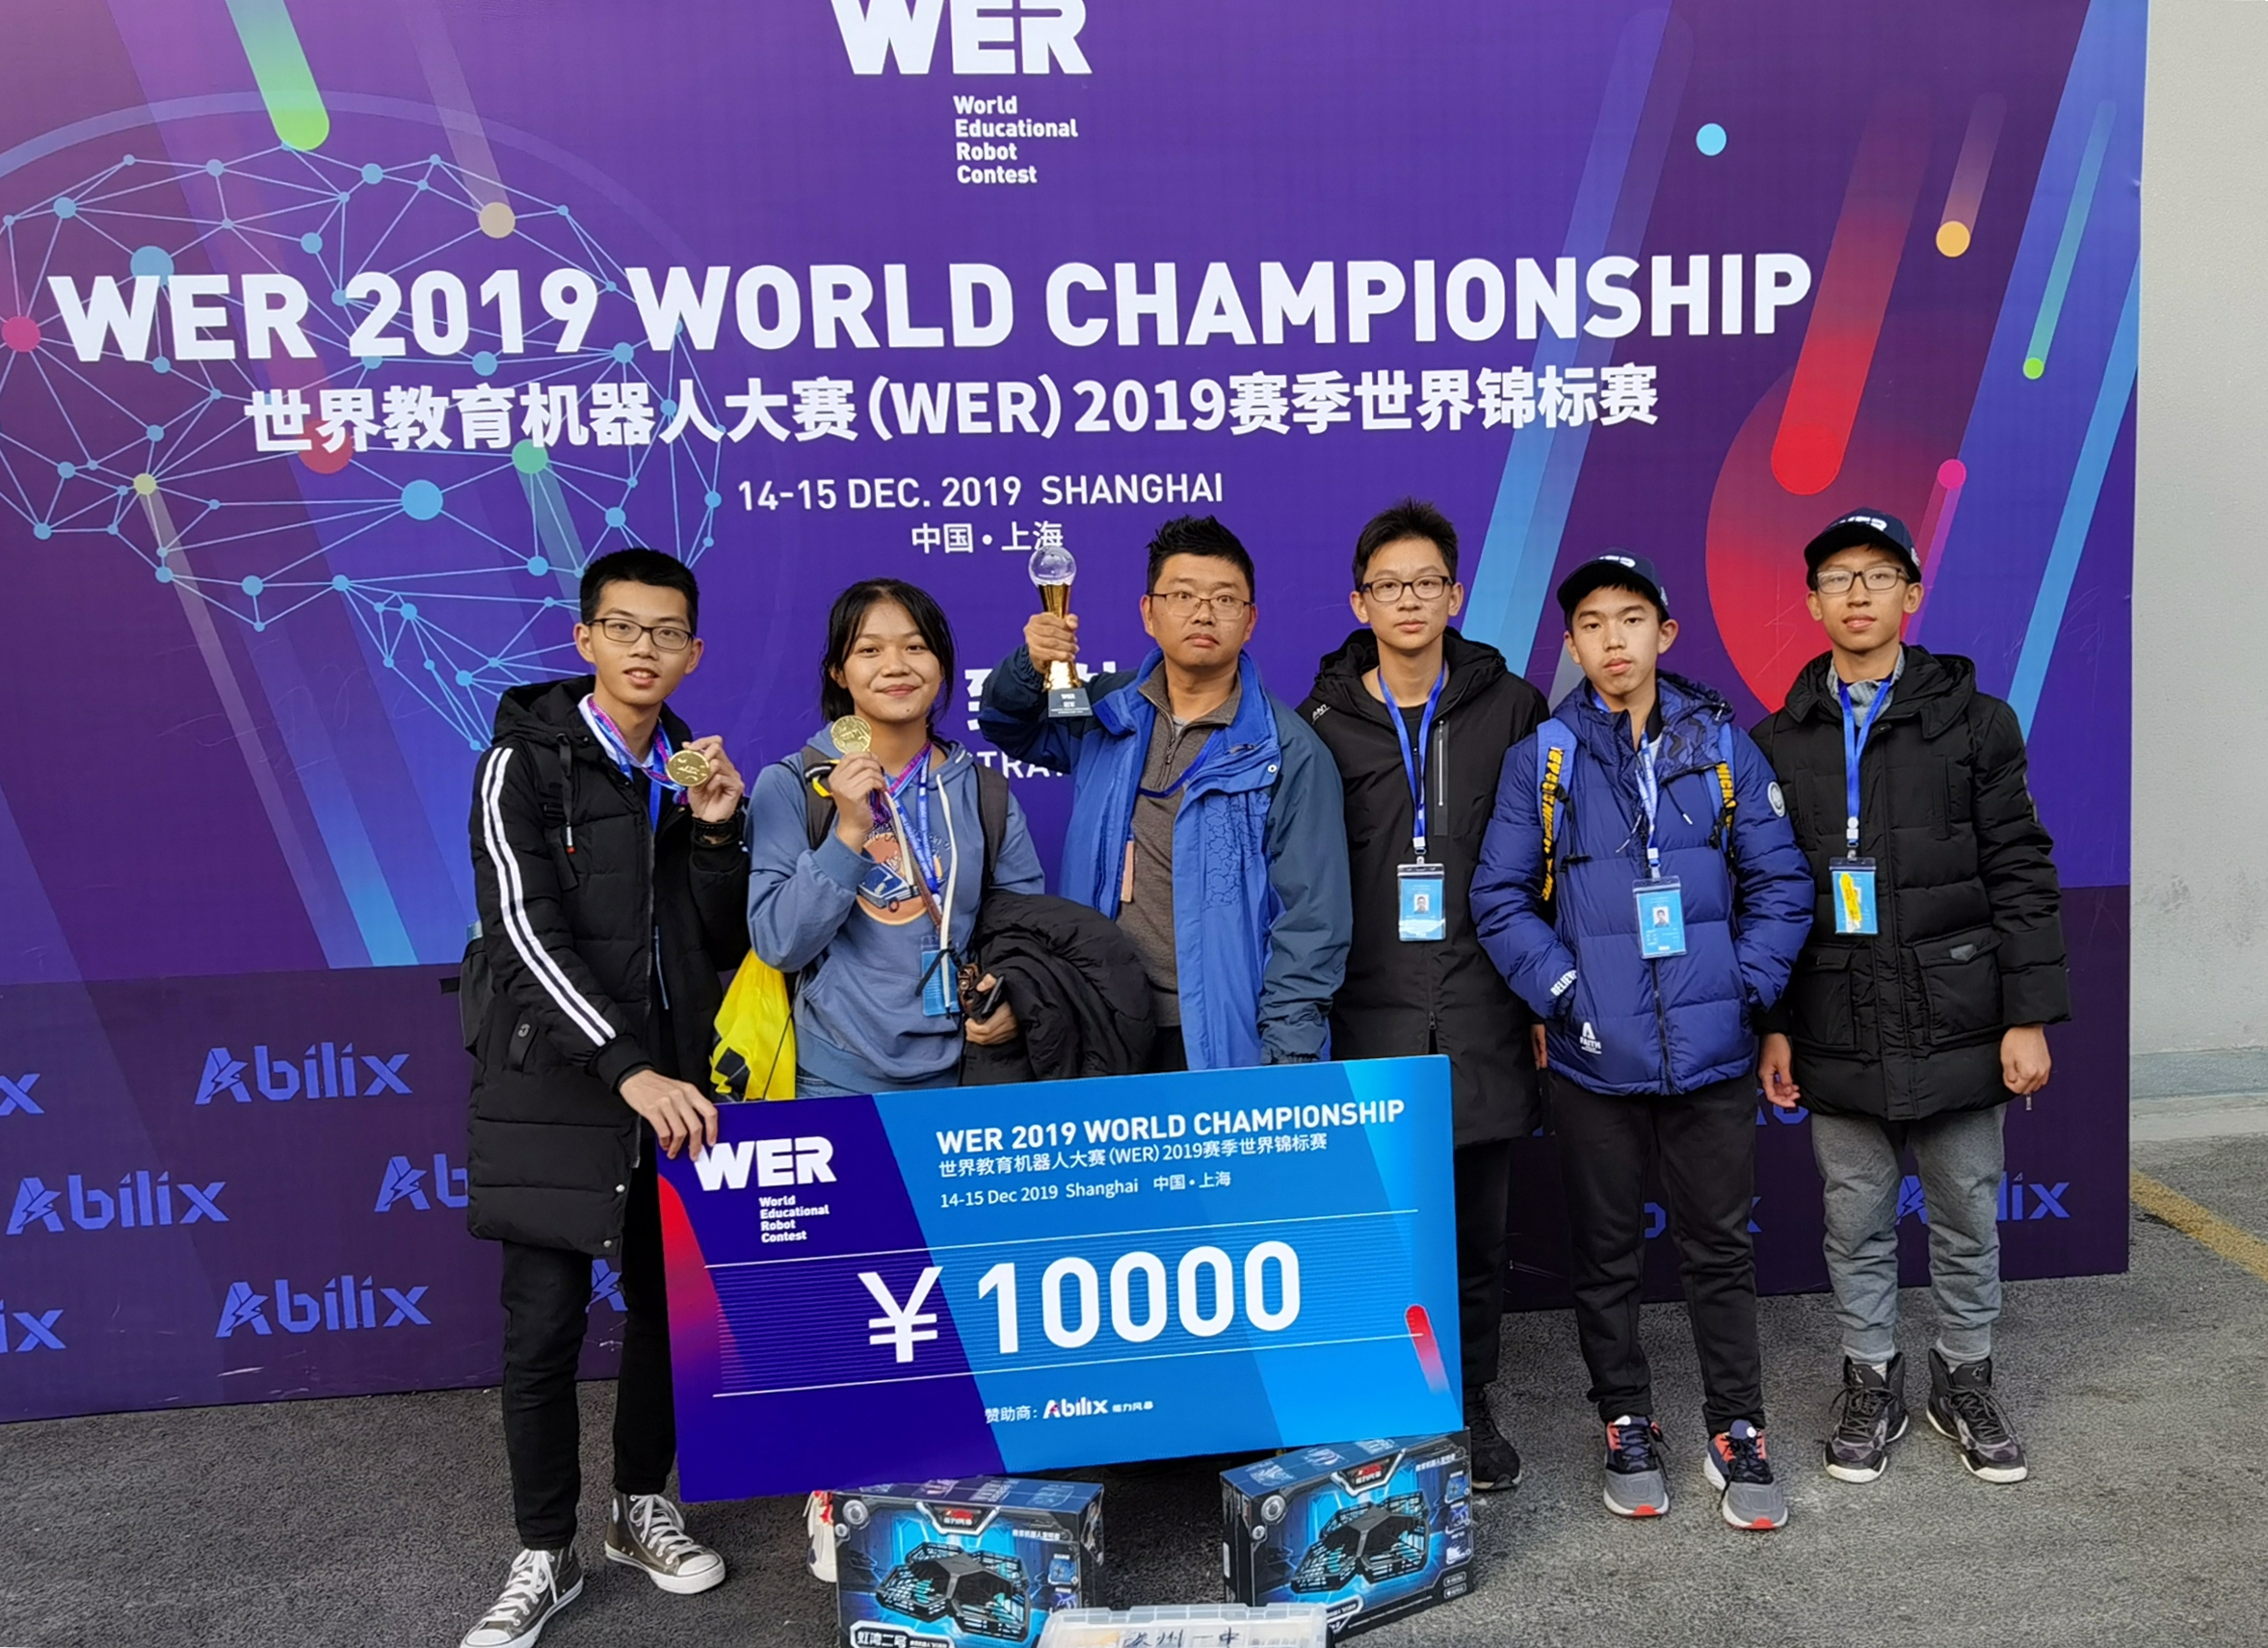 喜报   钦州一中勇夺世界教育机器人wer世界锦标赛之wer普及赛高中组冠军”